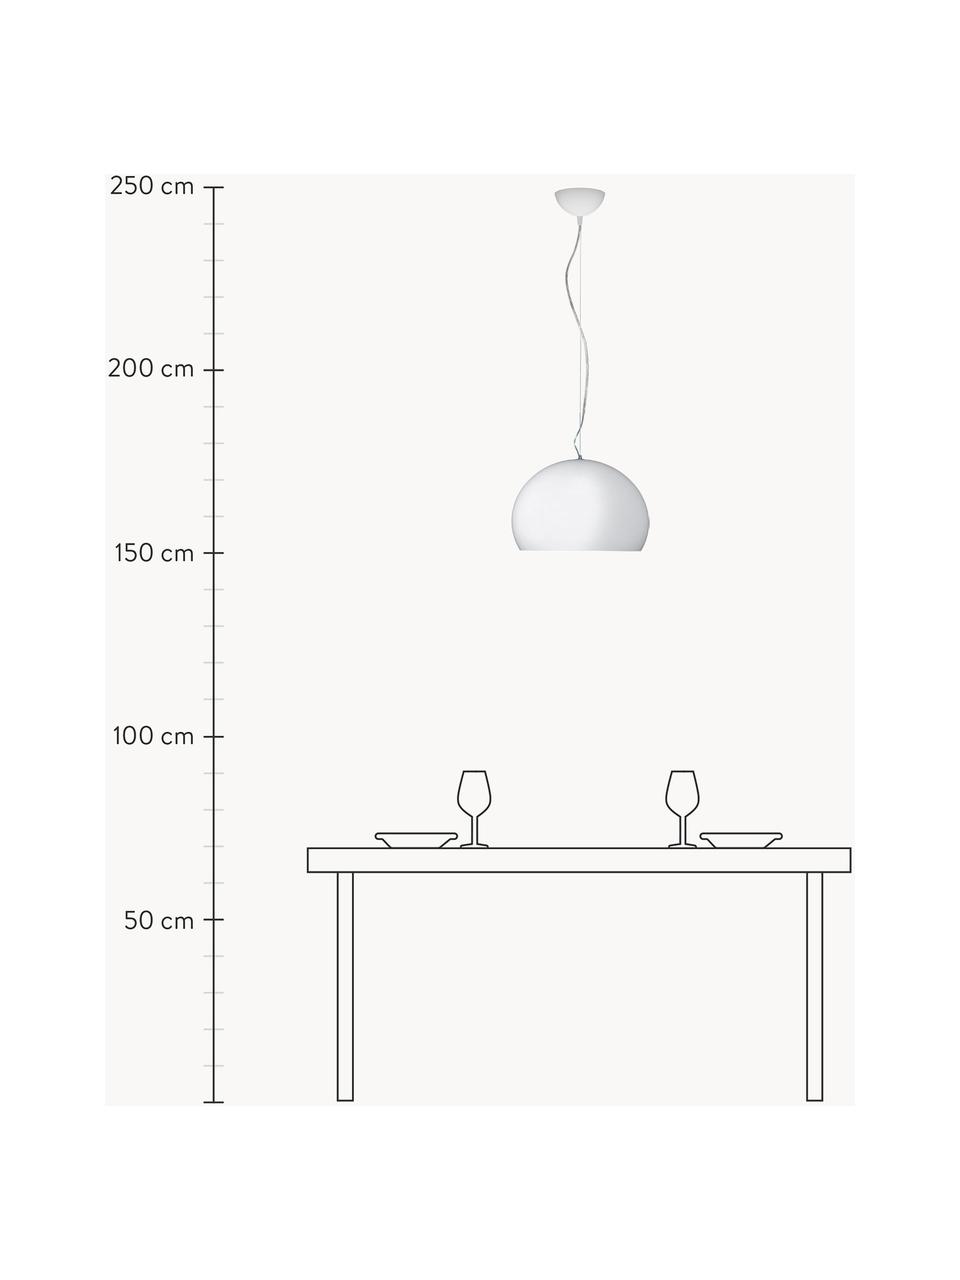 Pendelleuchte Small Fl/Y, Lampenschirm: Kunststoff, Weiss, Ø 38 x H 28 cm